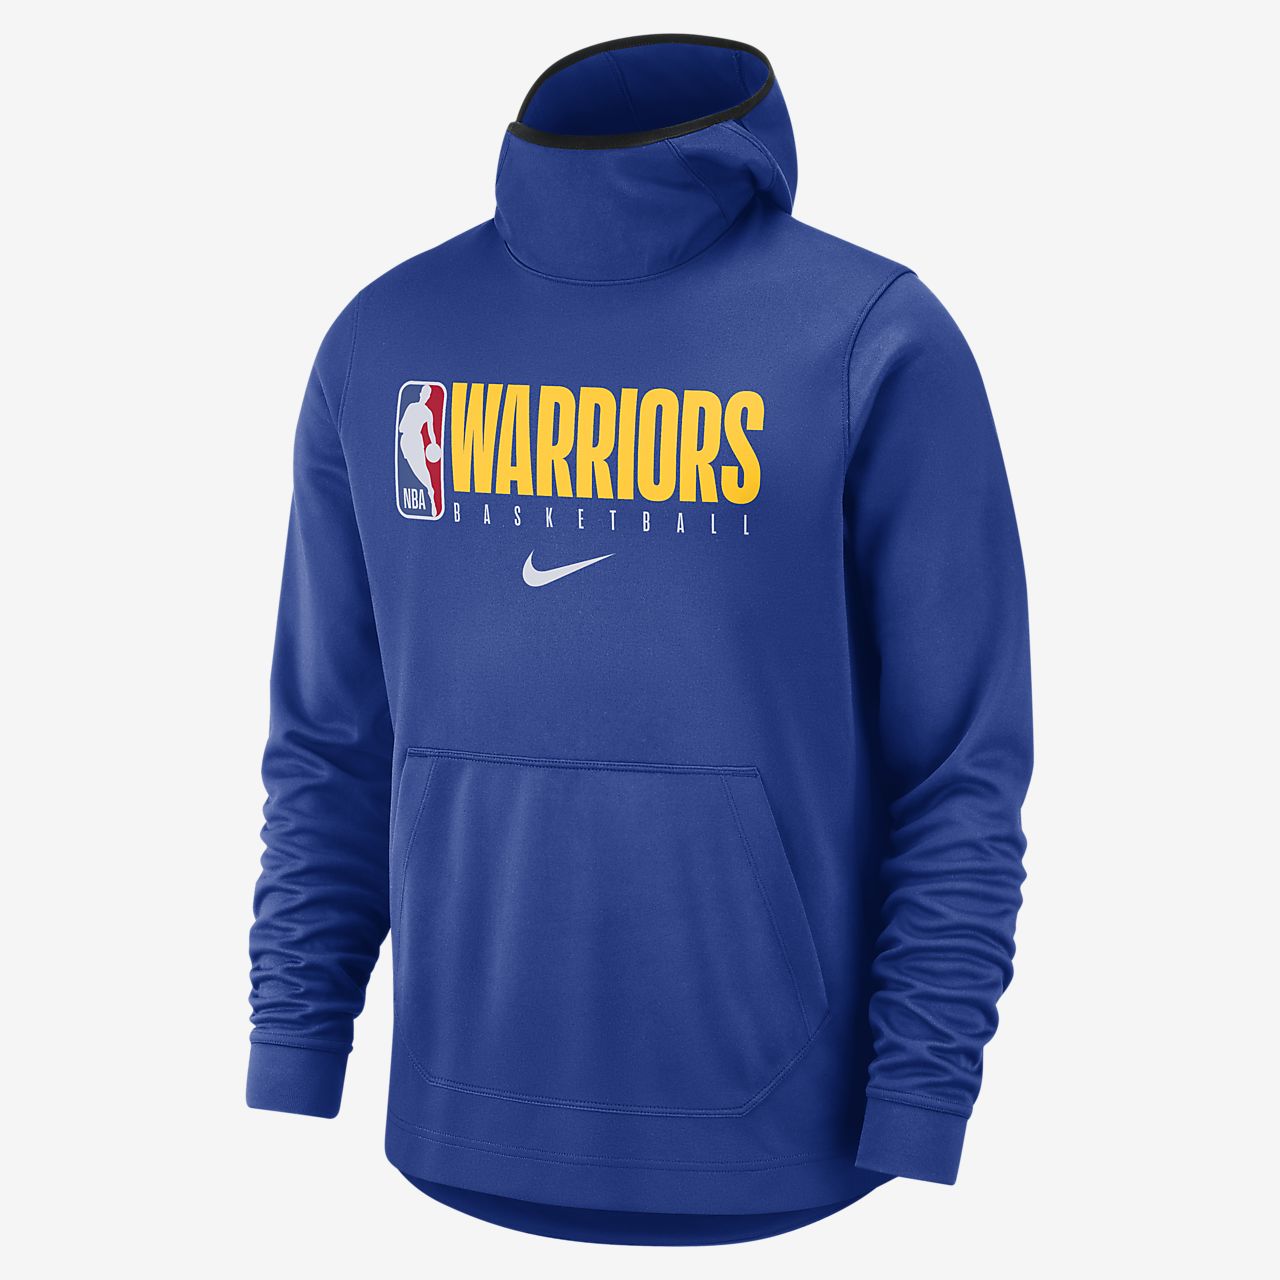 golden state warriors mens hoodie